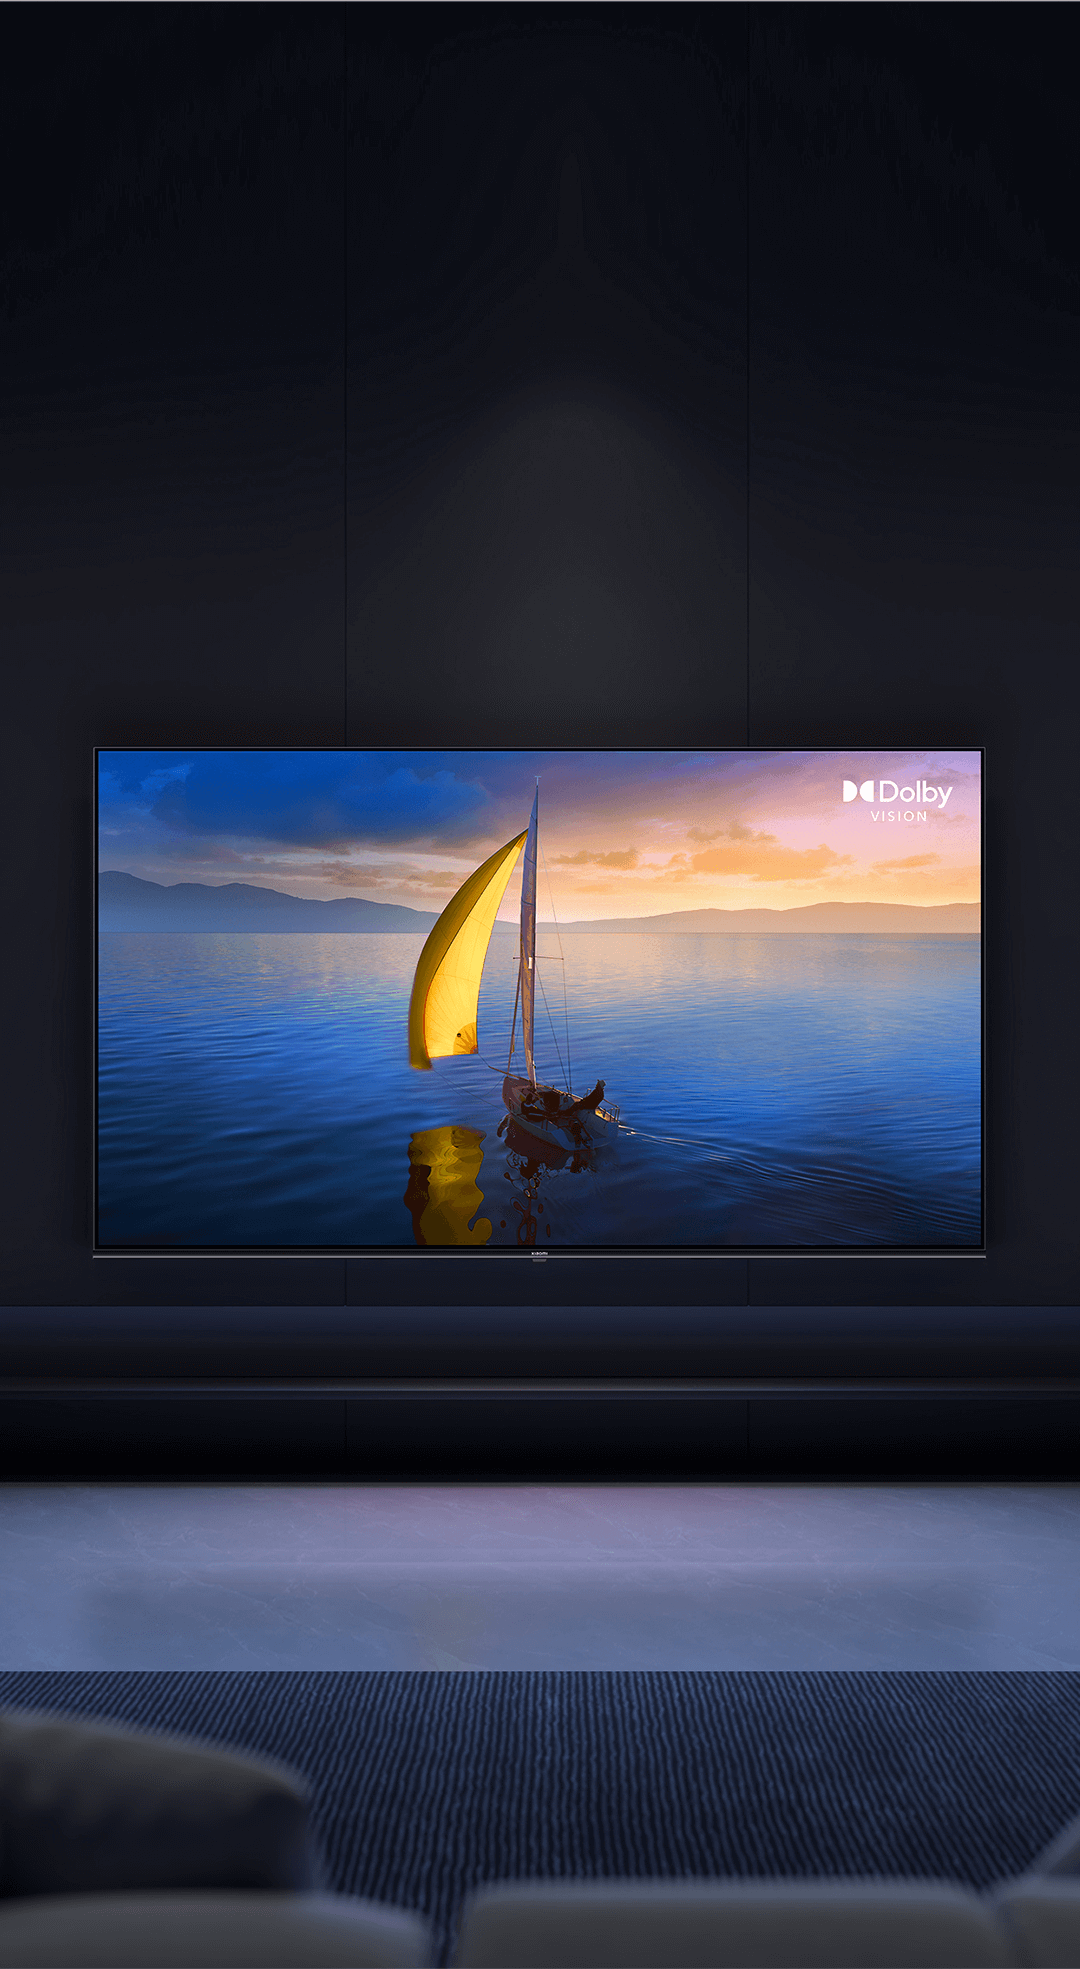 Xiaomi amplía su gama de televisores más económica con un nuevo modelo de 65  pulgadas - Noticias Xiaomi - XIAOMIADICTOS